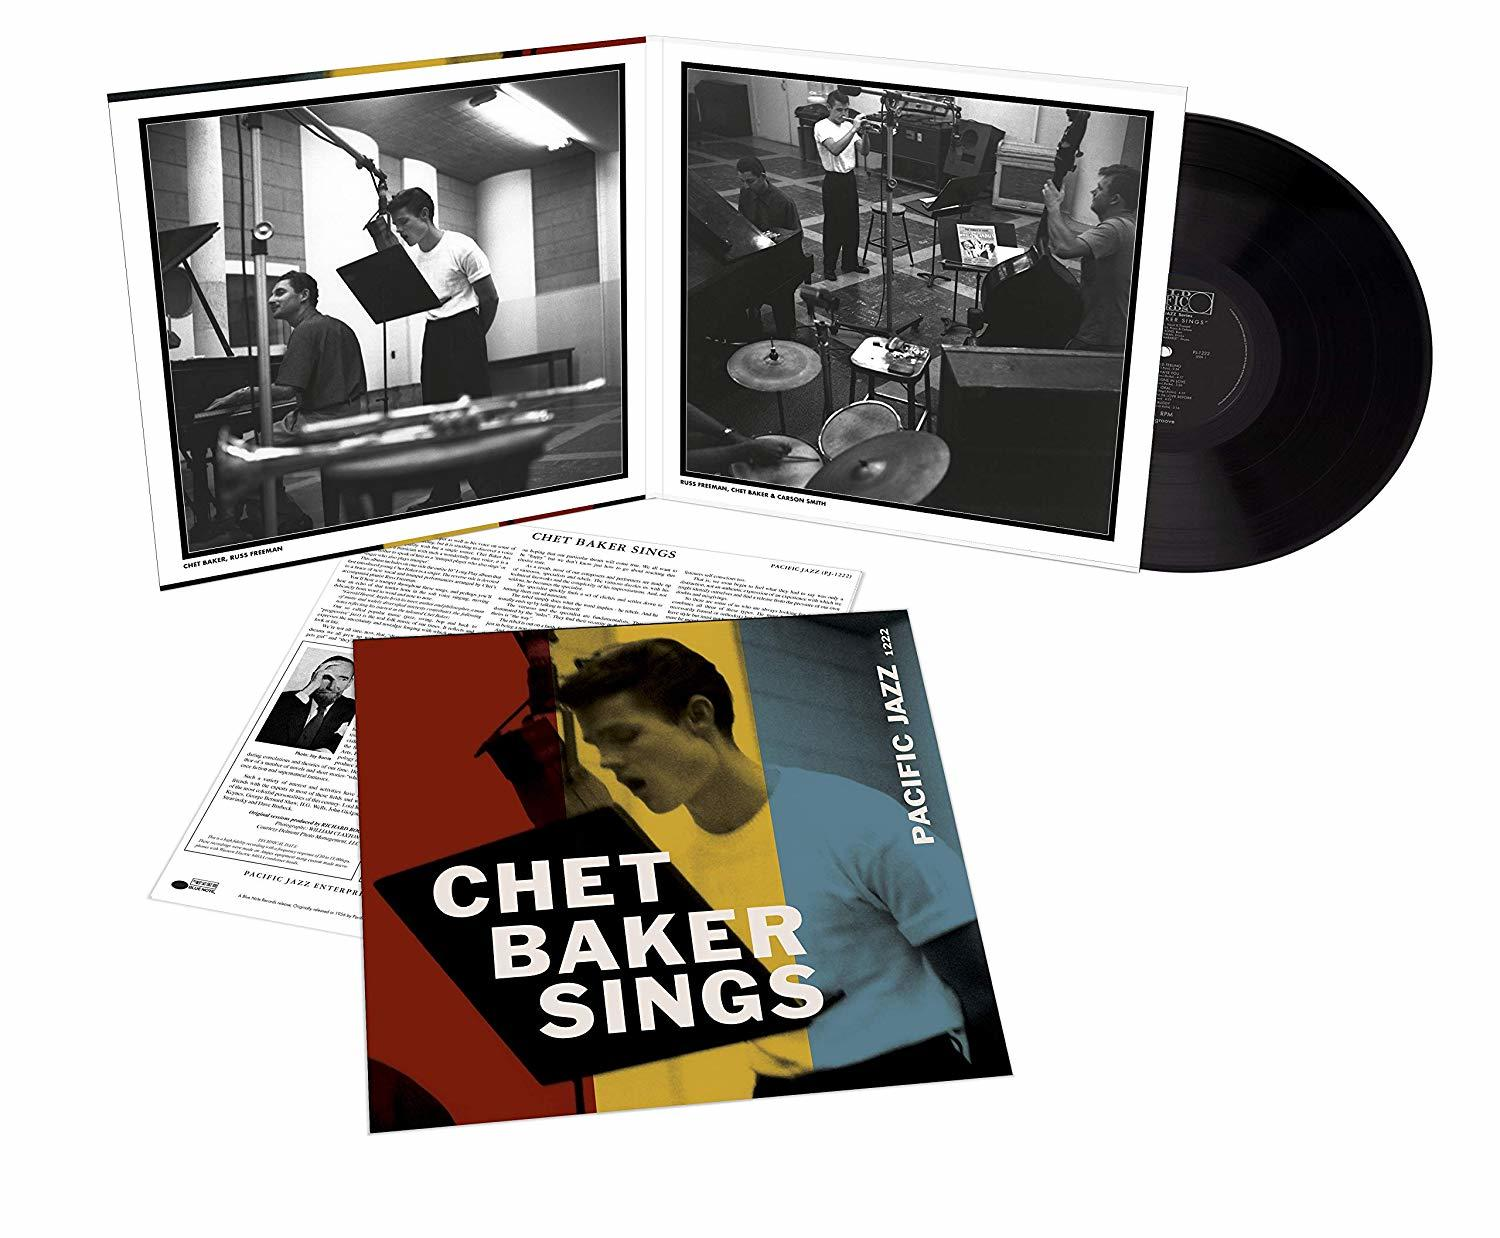 Chet Baker Sings Poet Chet Baker (Tone (Vinyl) - - Vinyl)